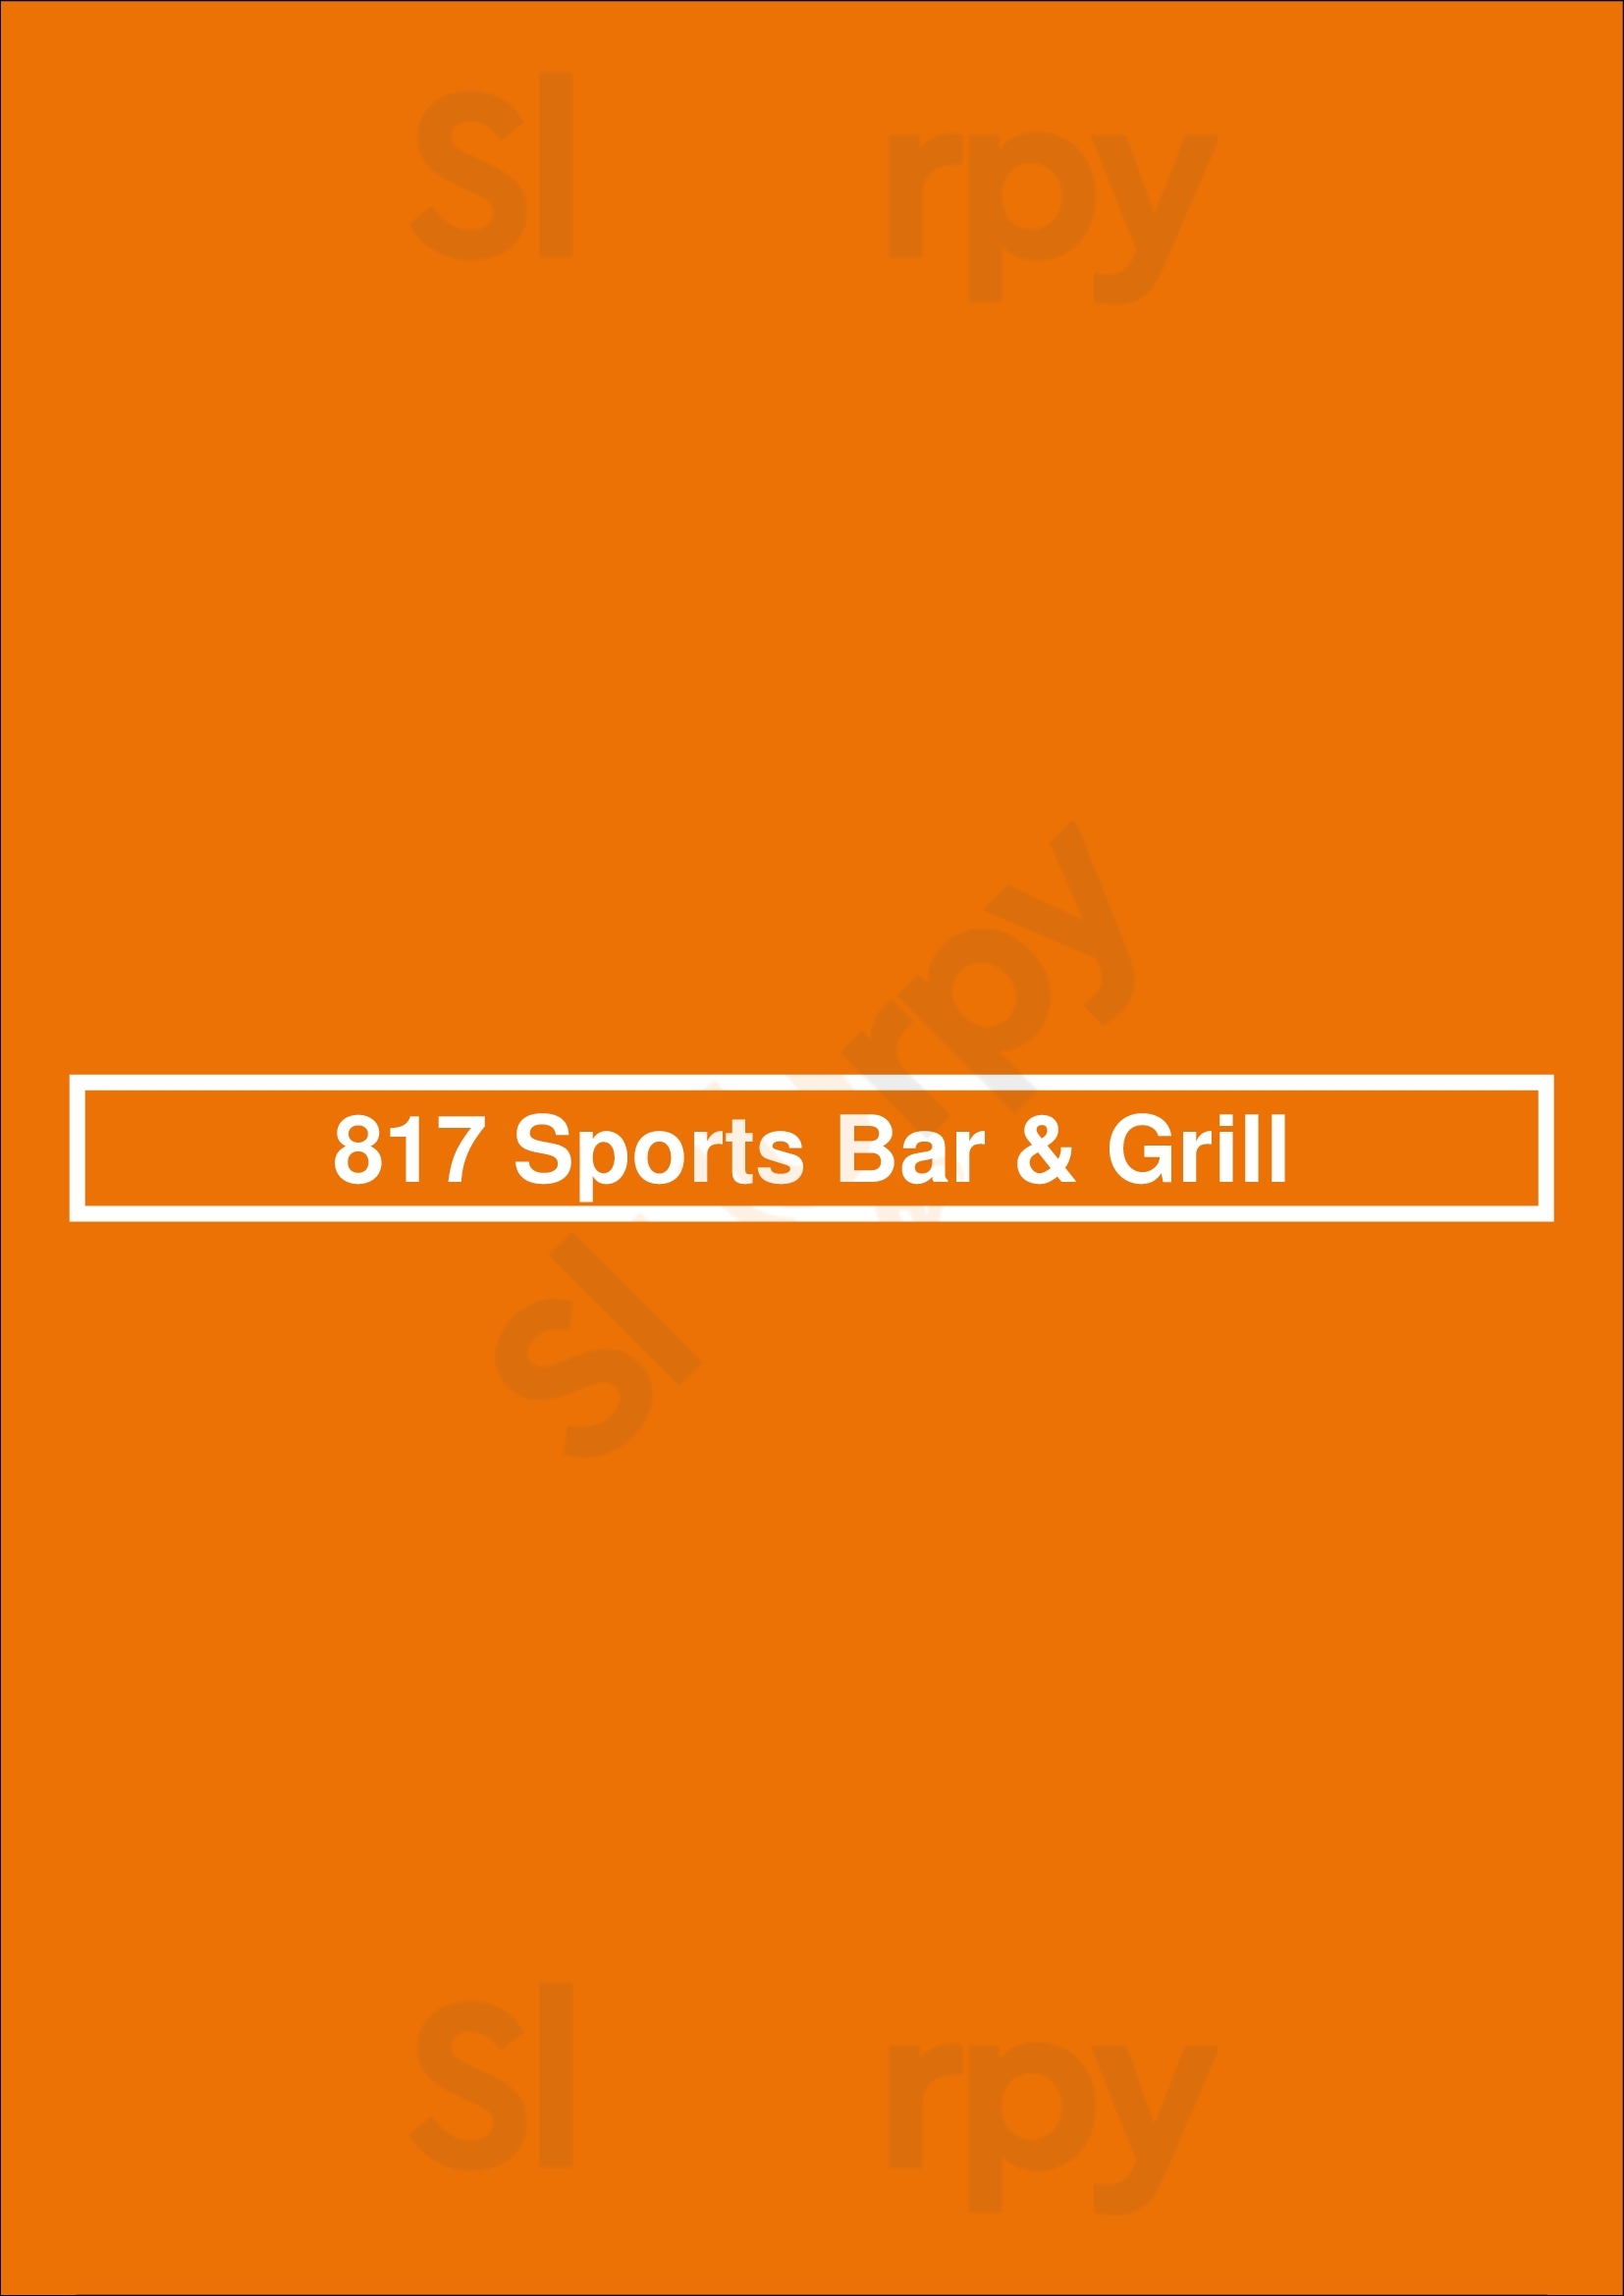 817 Sports Bar & Grill Toronto Menu - 1